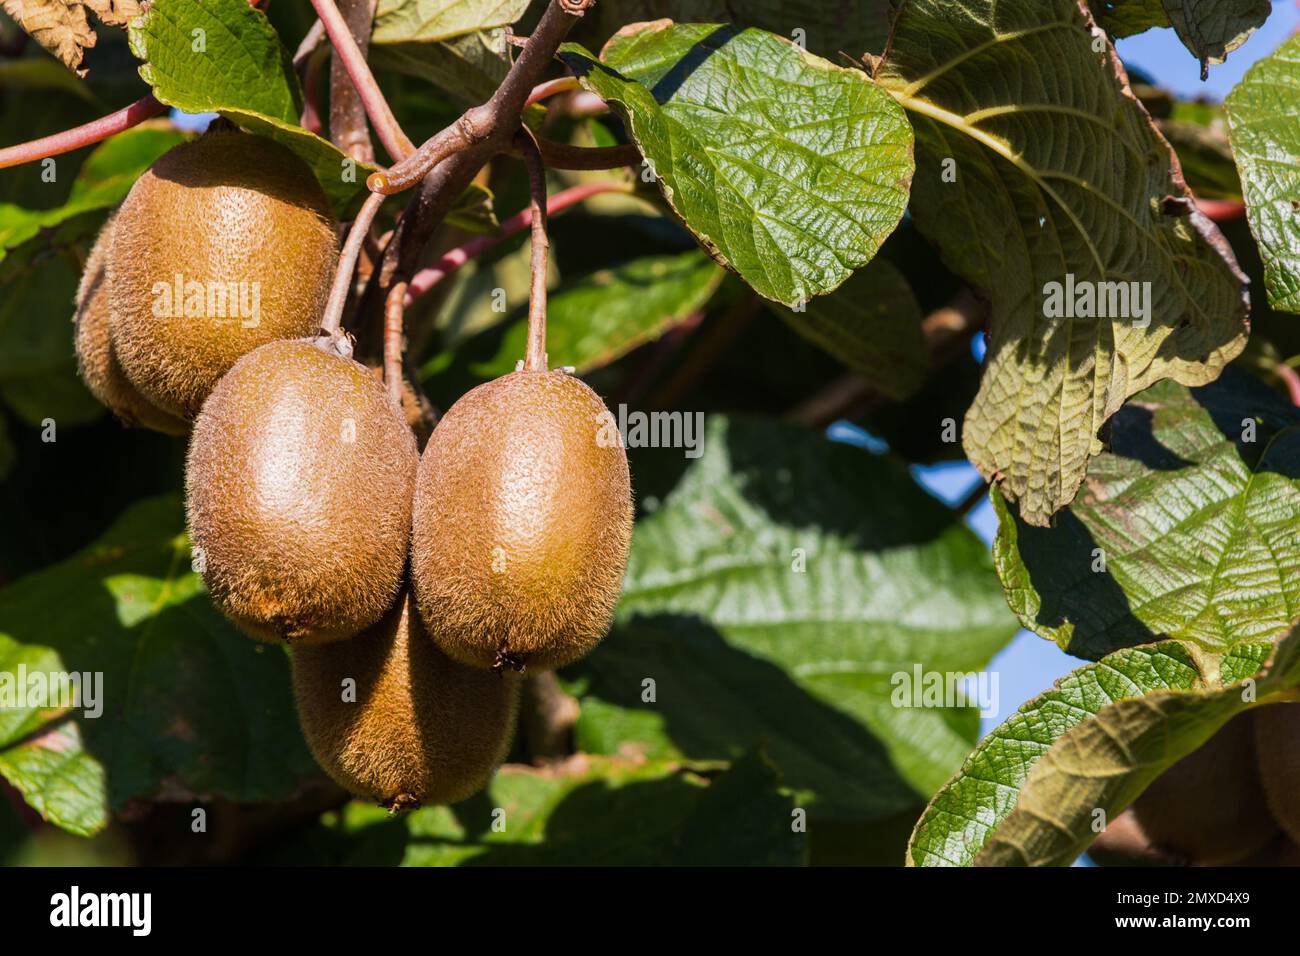 kiwi fruit, Chinese gooseberry (Actinidia deliciosa), kiwia on a branch Stock Photo